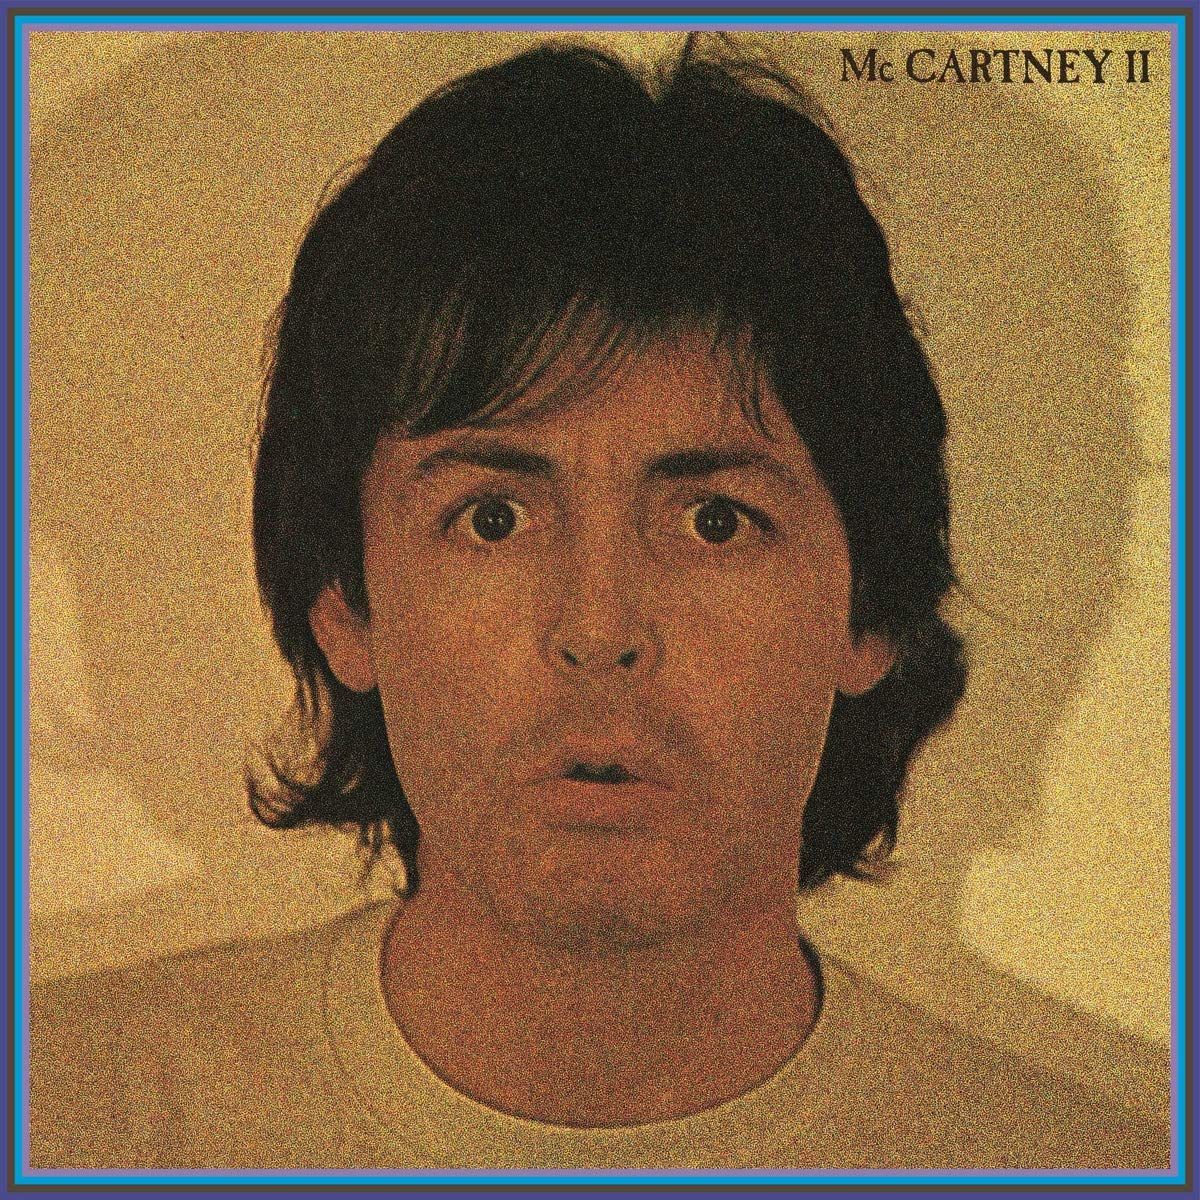 McCartney II (cover)